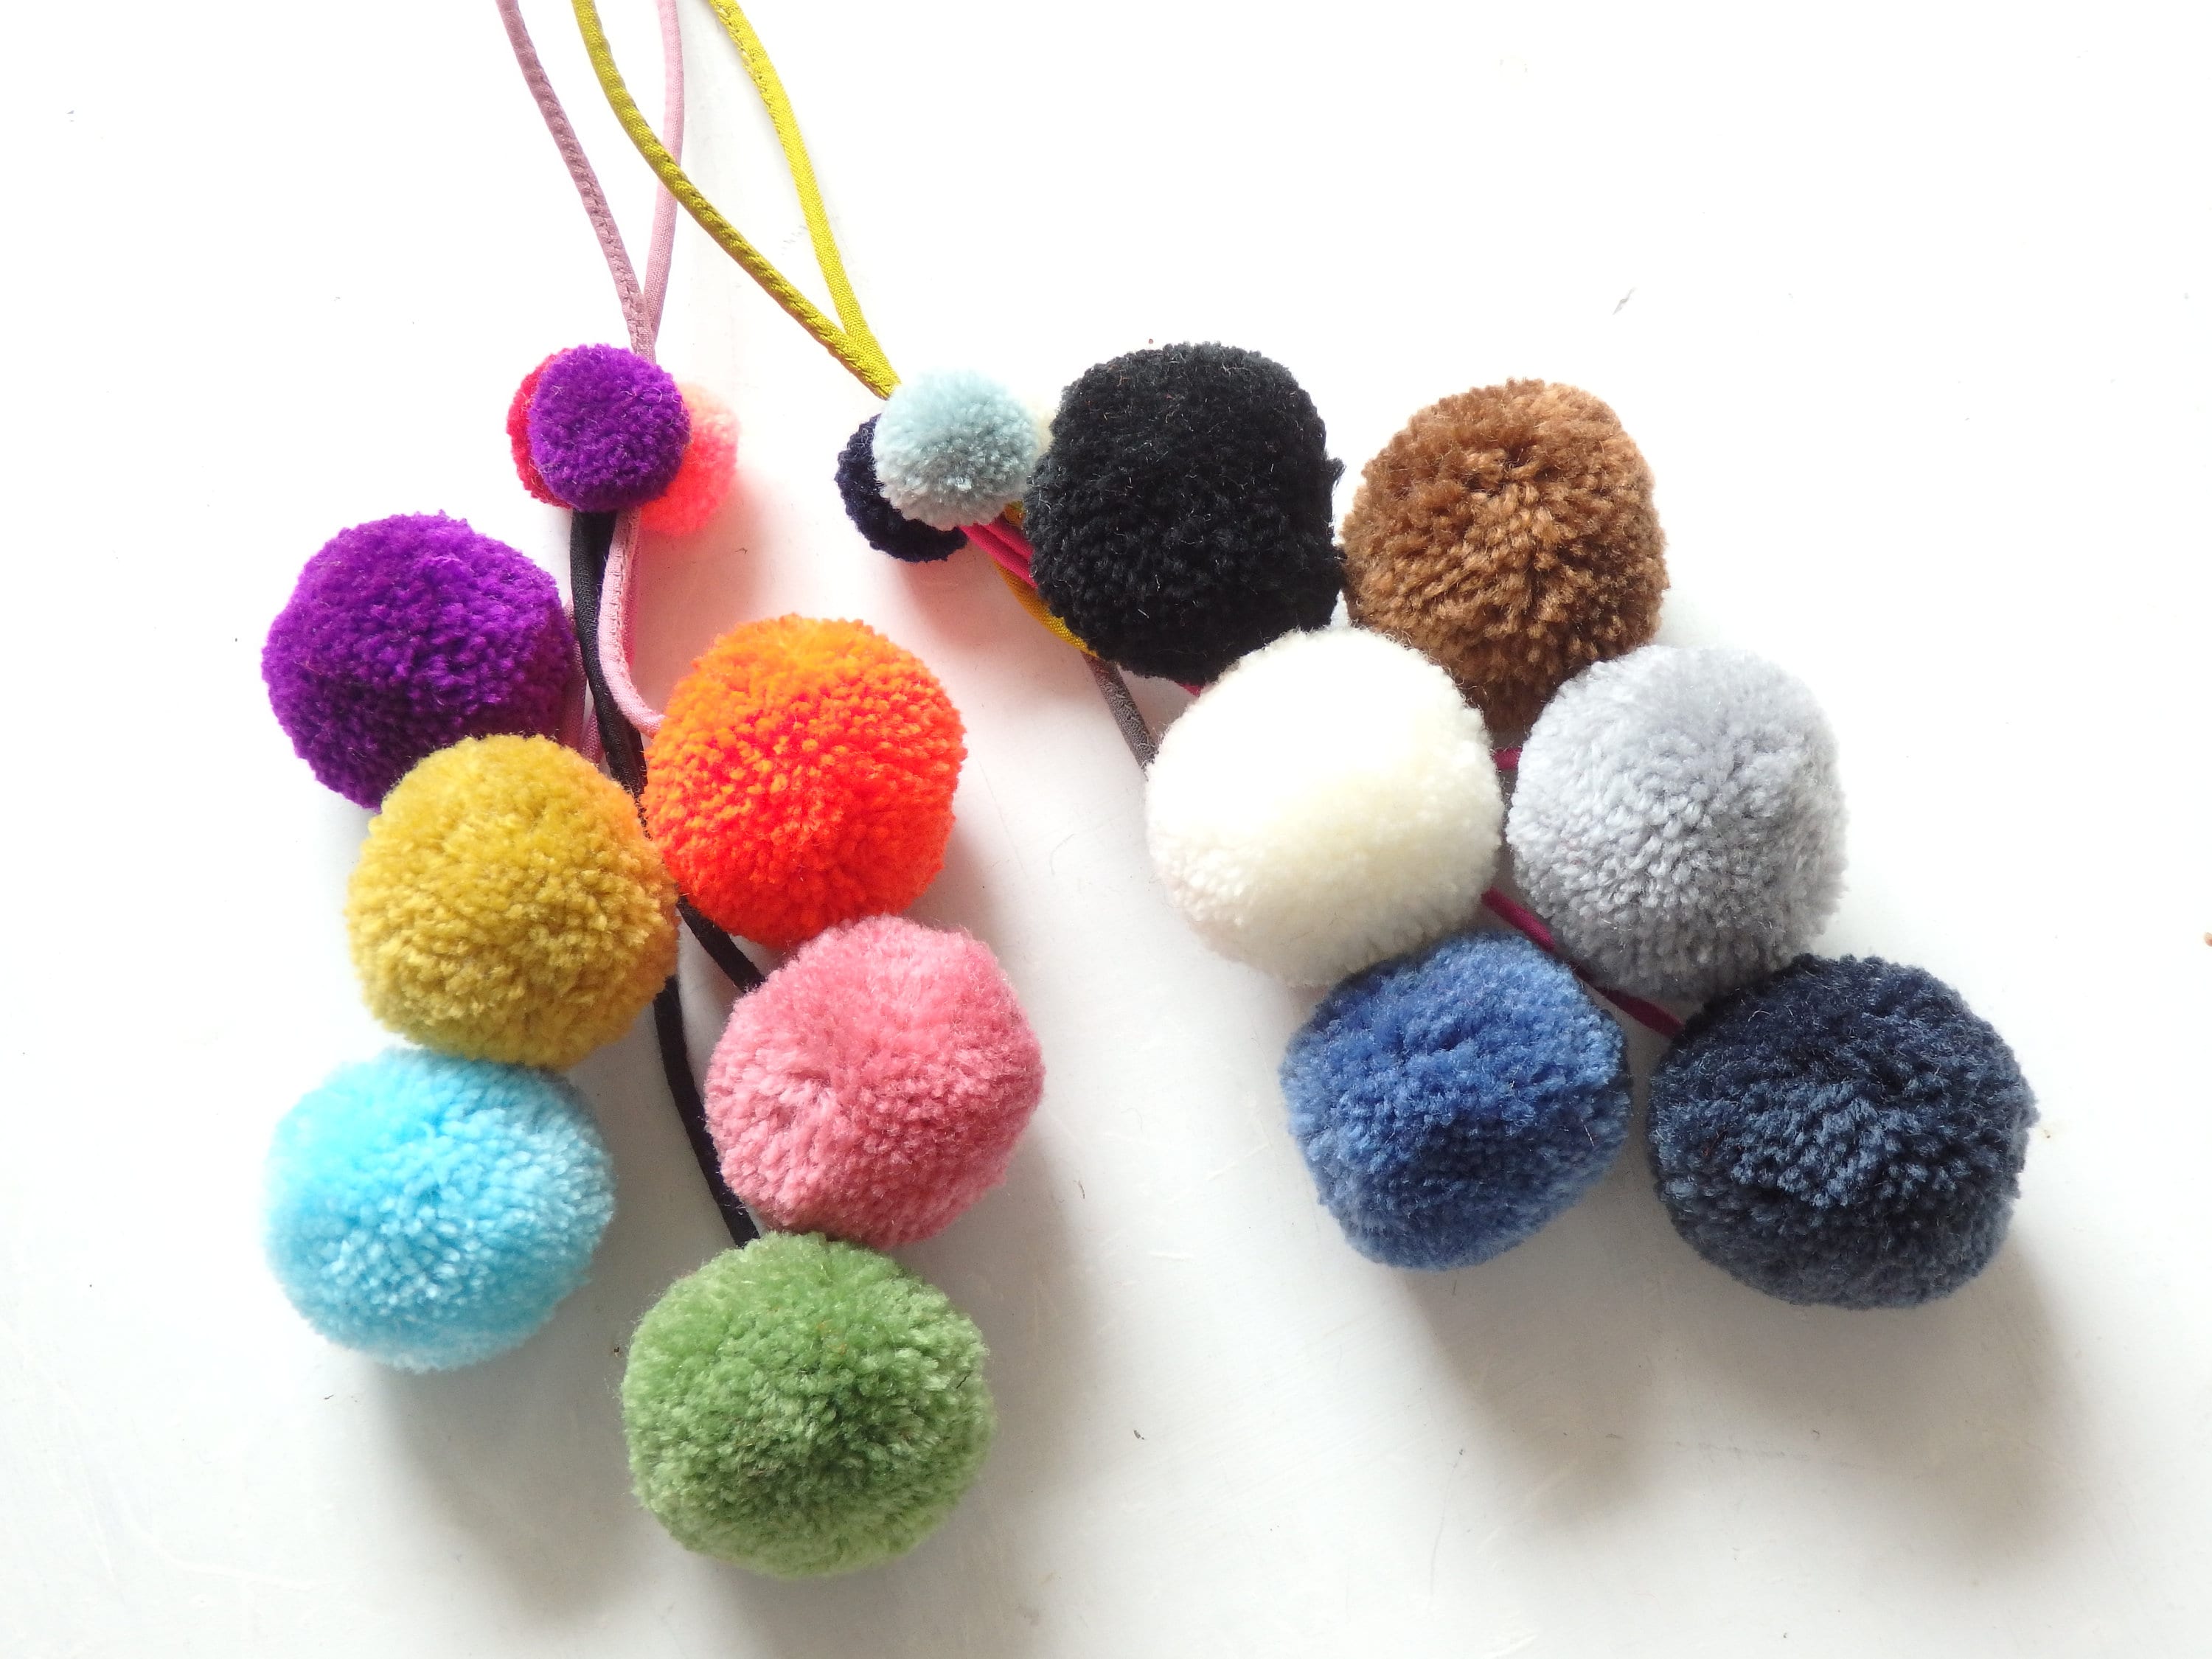 50pcs Cotton Pom Poms, Assorted Color Cotton Pompom Balls, Handmade Craft  Supply 20mm 